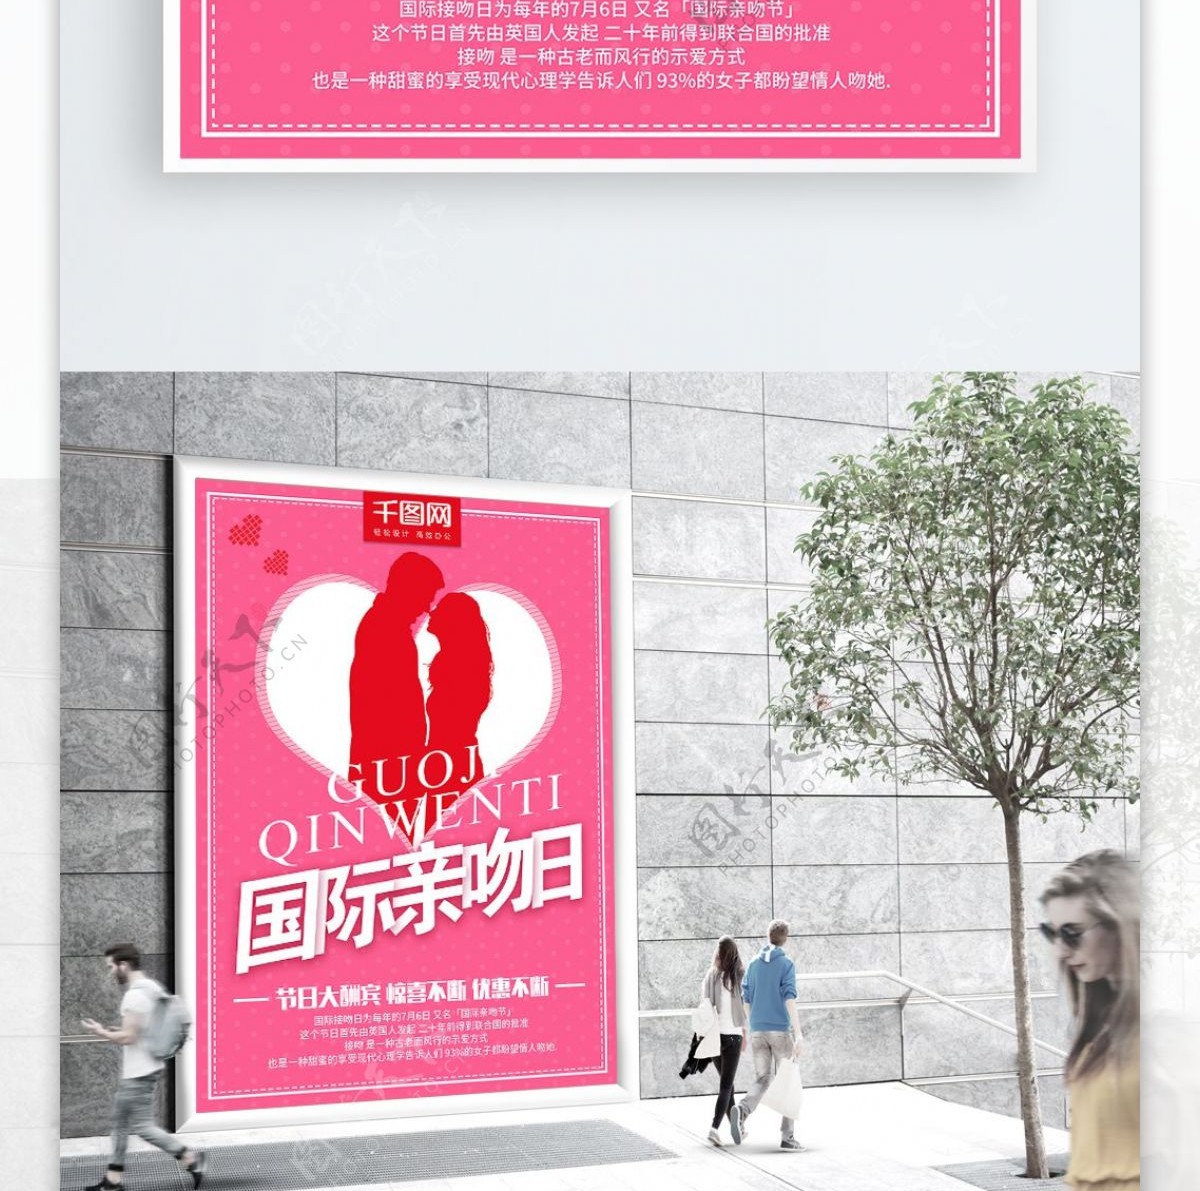 7月6日国际接吻日节日大酬宾节日海报